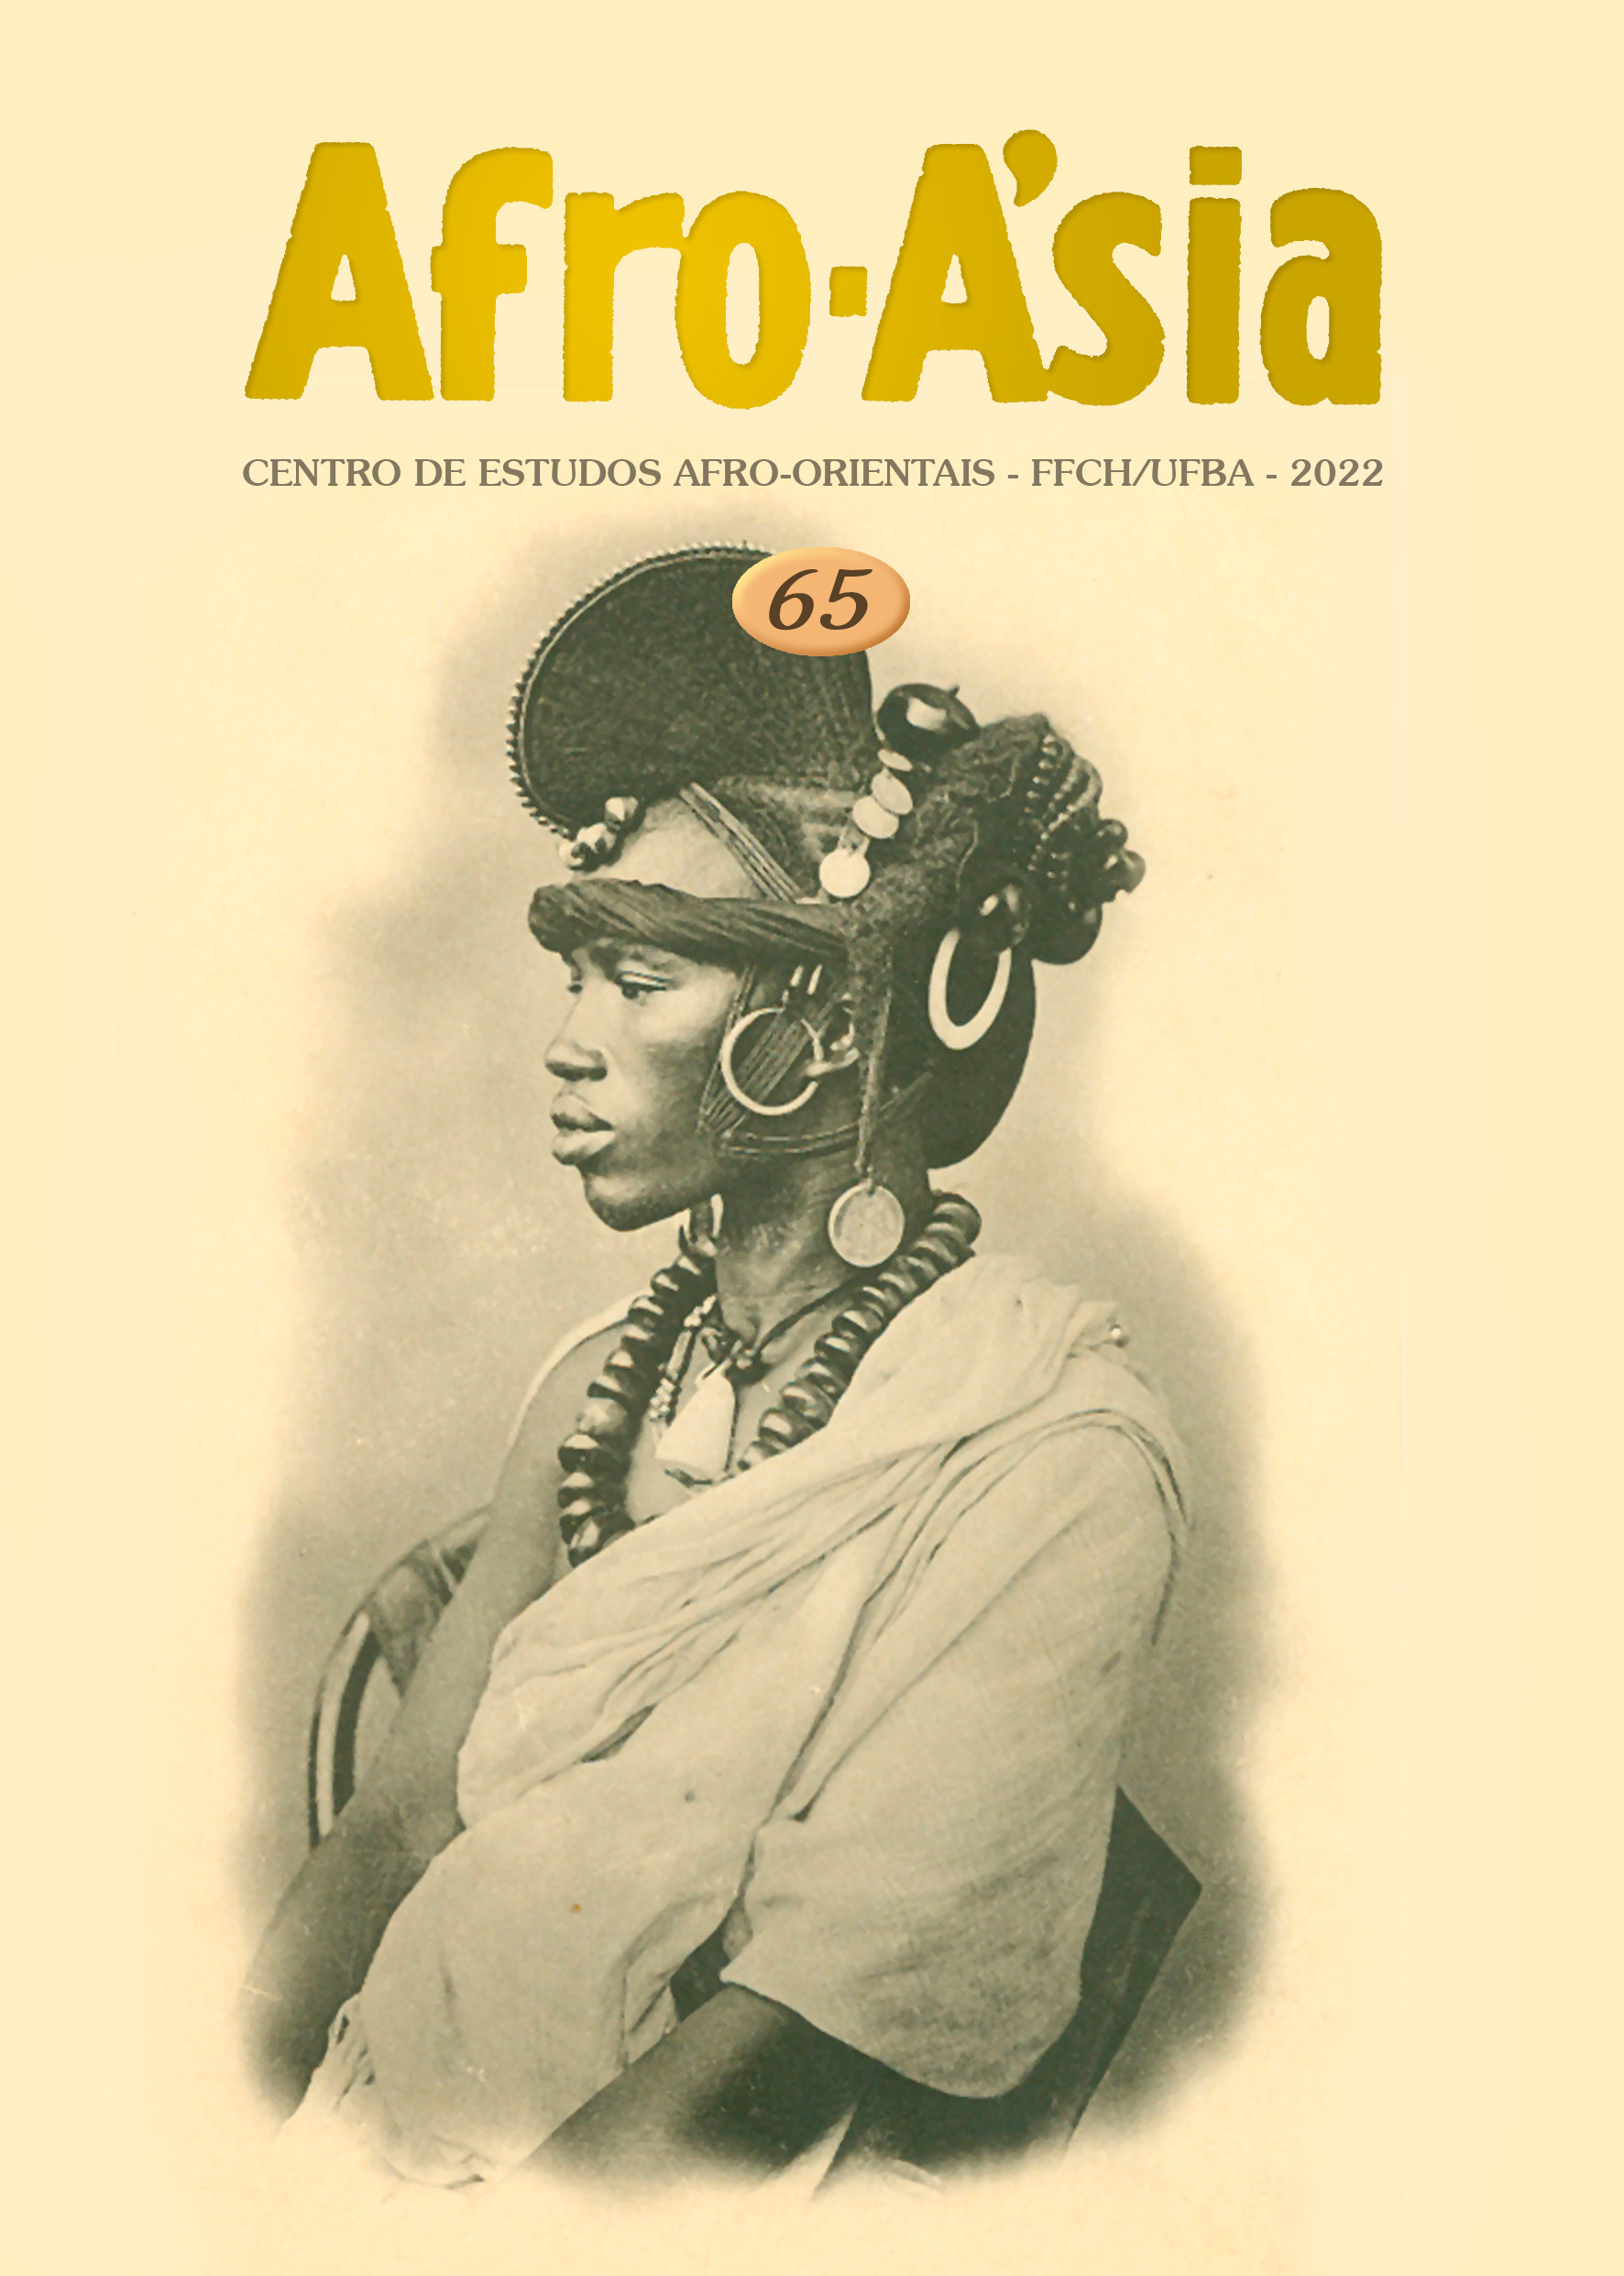 Estetica Magazine ASIA Edition (3/2019)